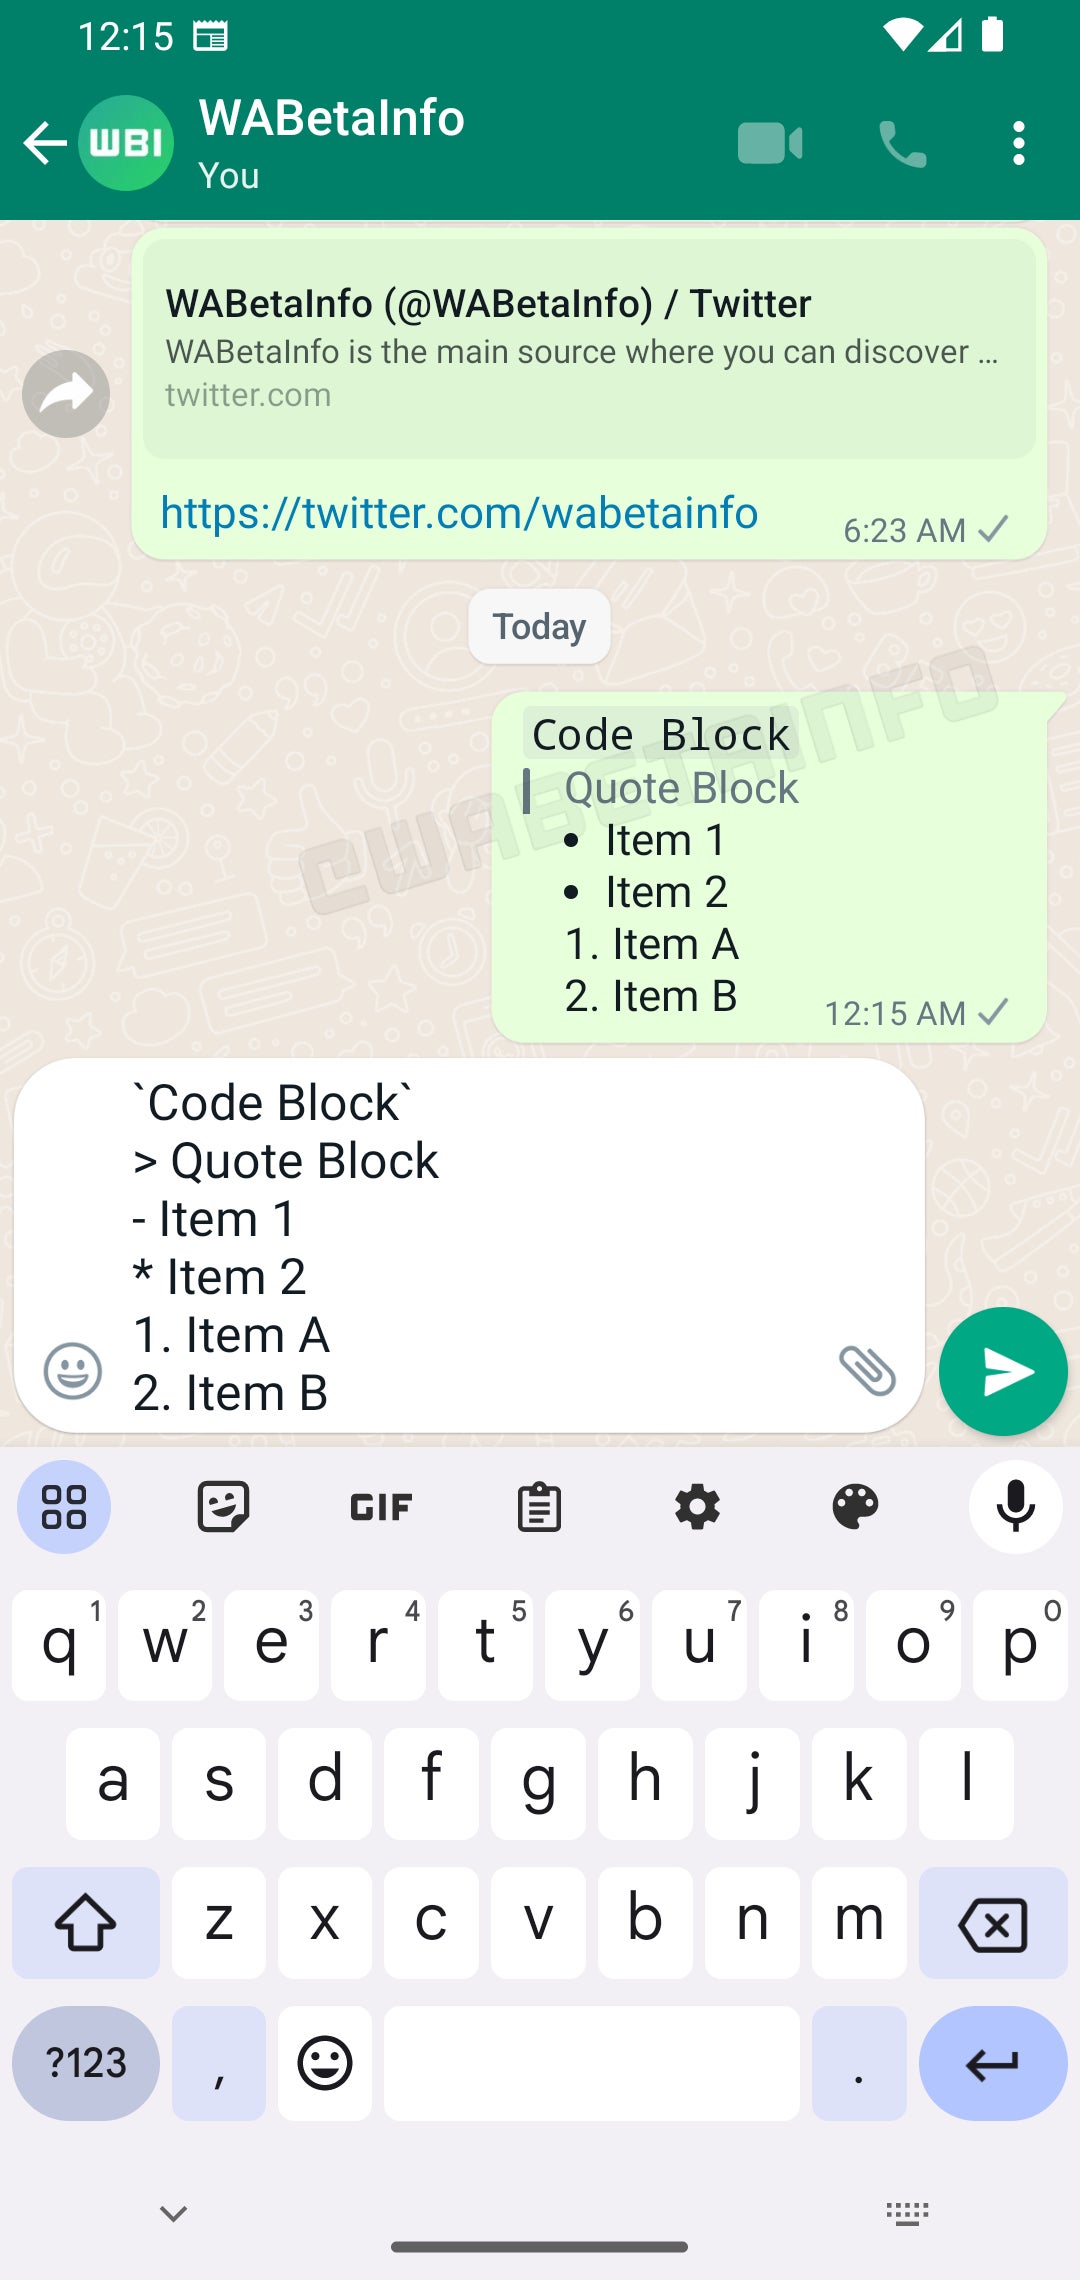 WhatsApp trará ferramentas adicionais de formatação de texto, incluindo marcadores e citações